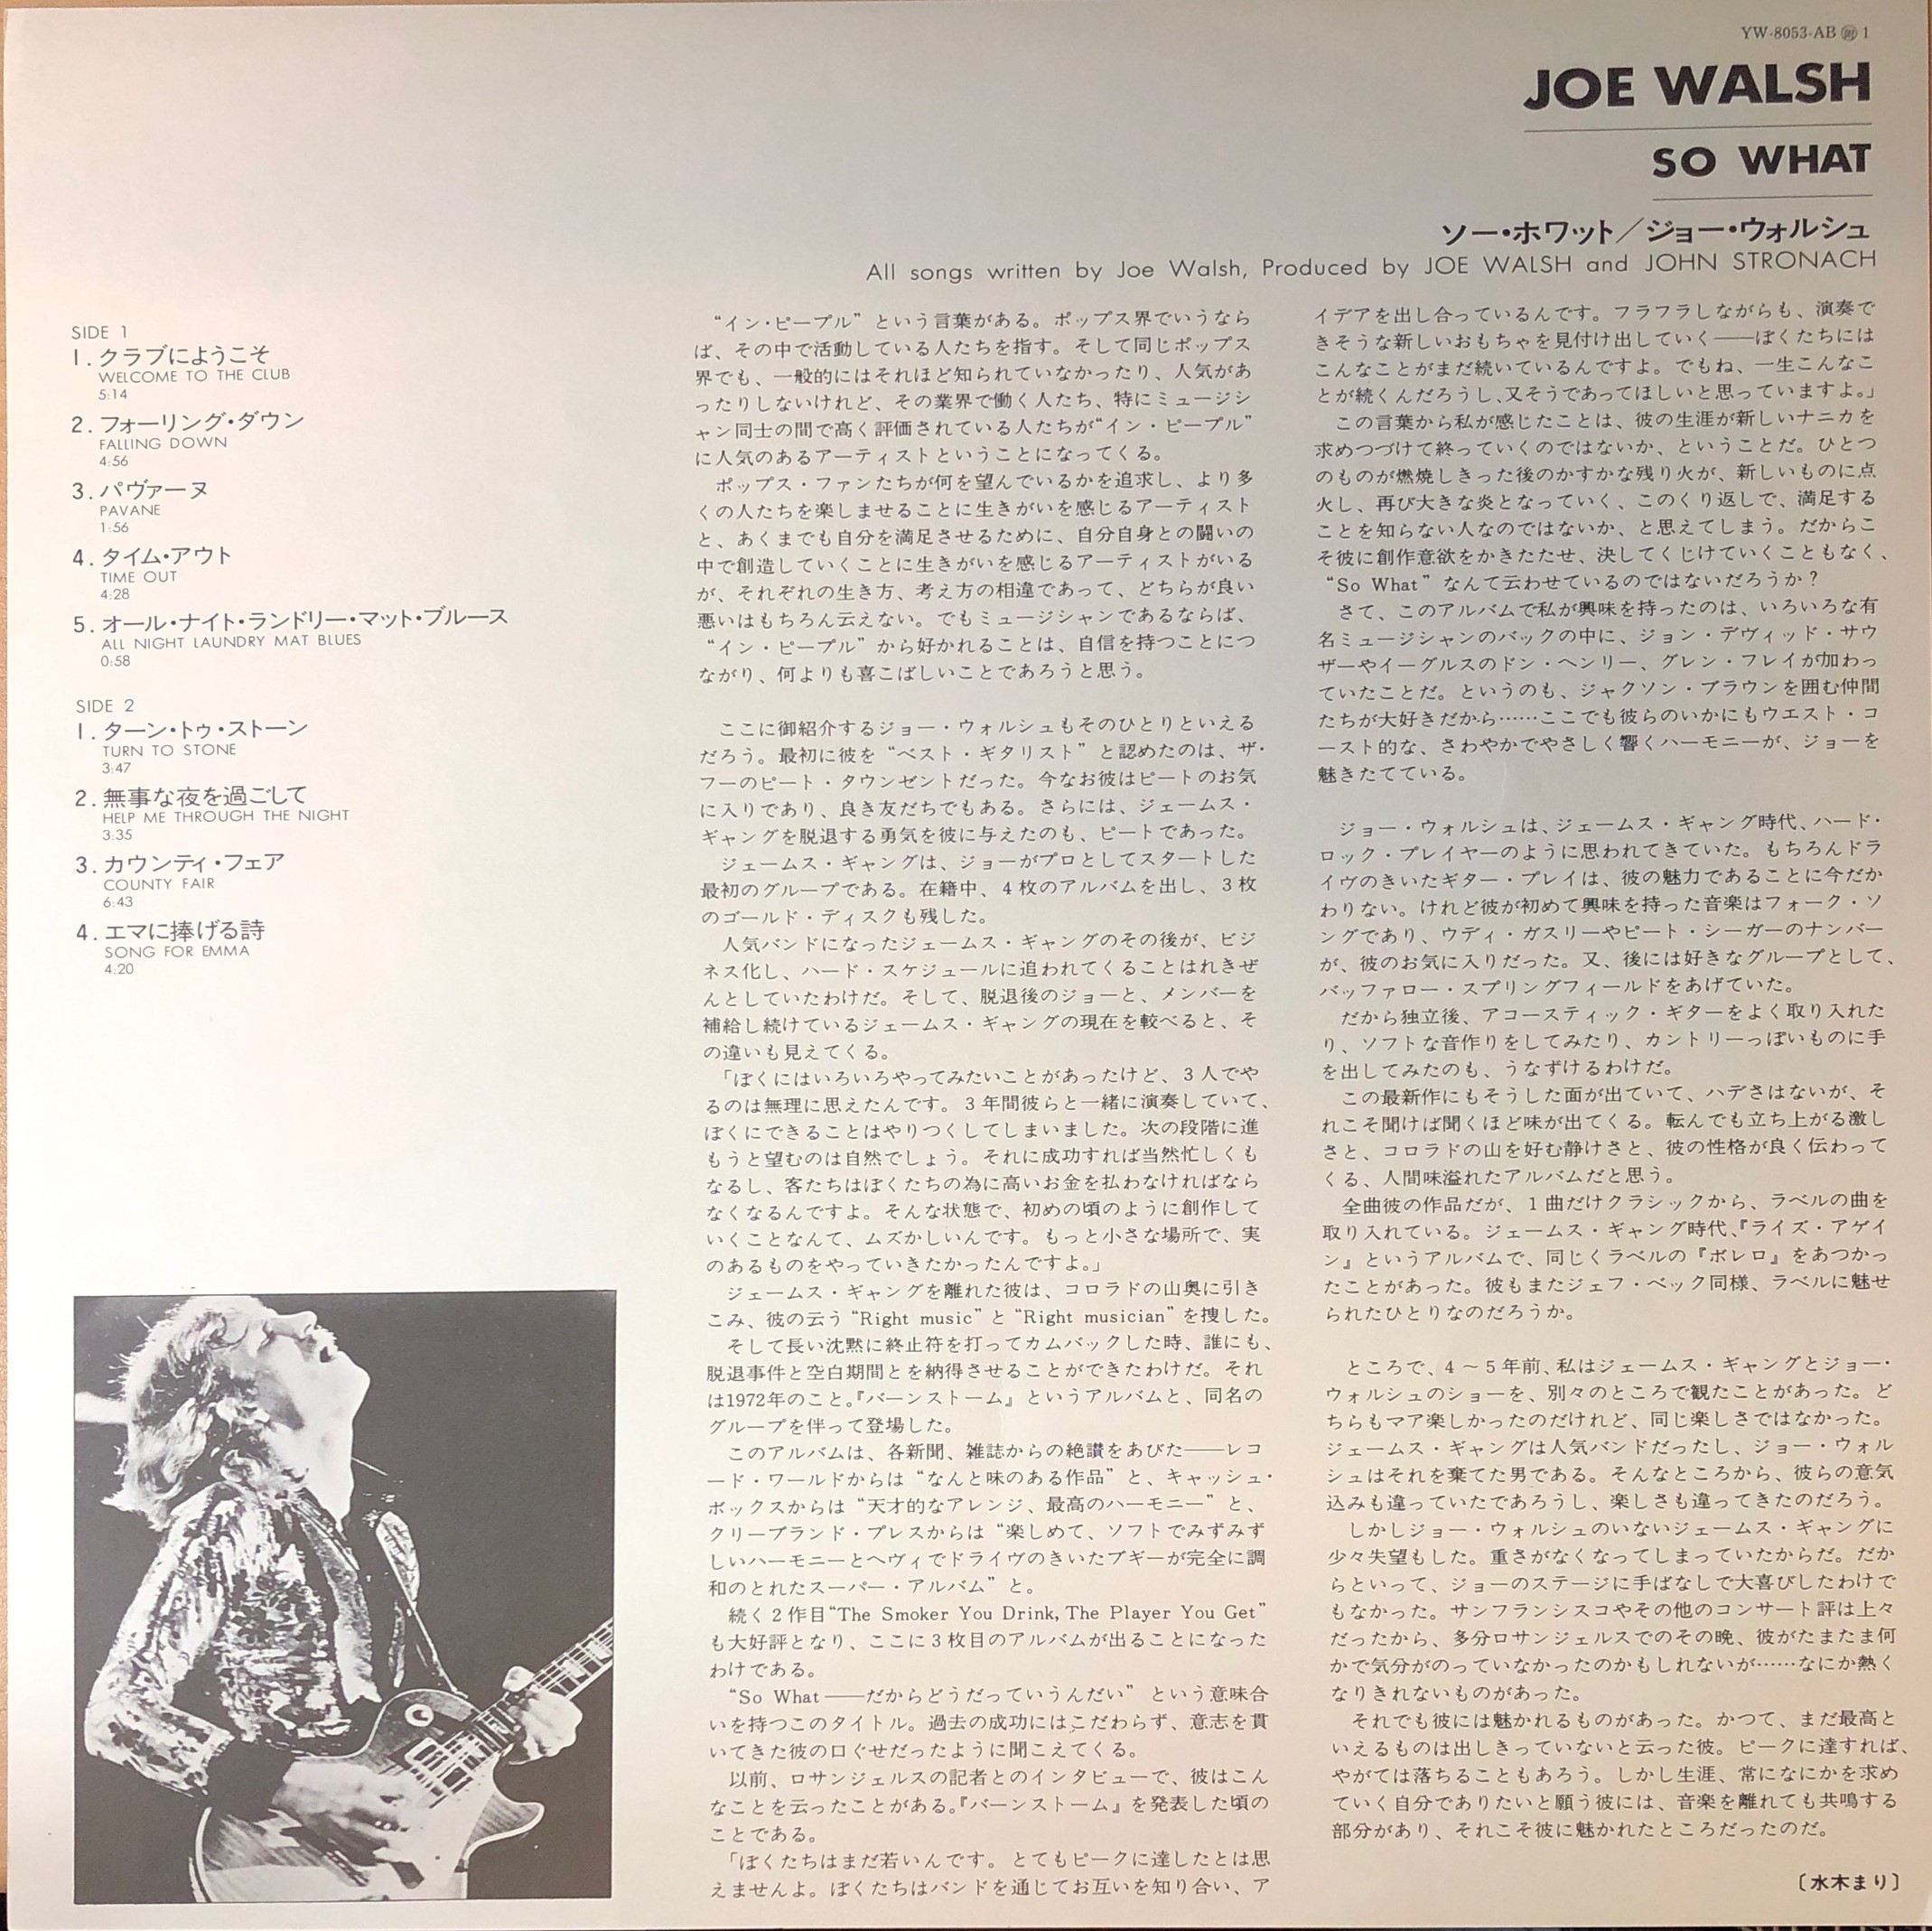 Joe Walsh So What 中古レコード通販 買取のアカル レコーズ